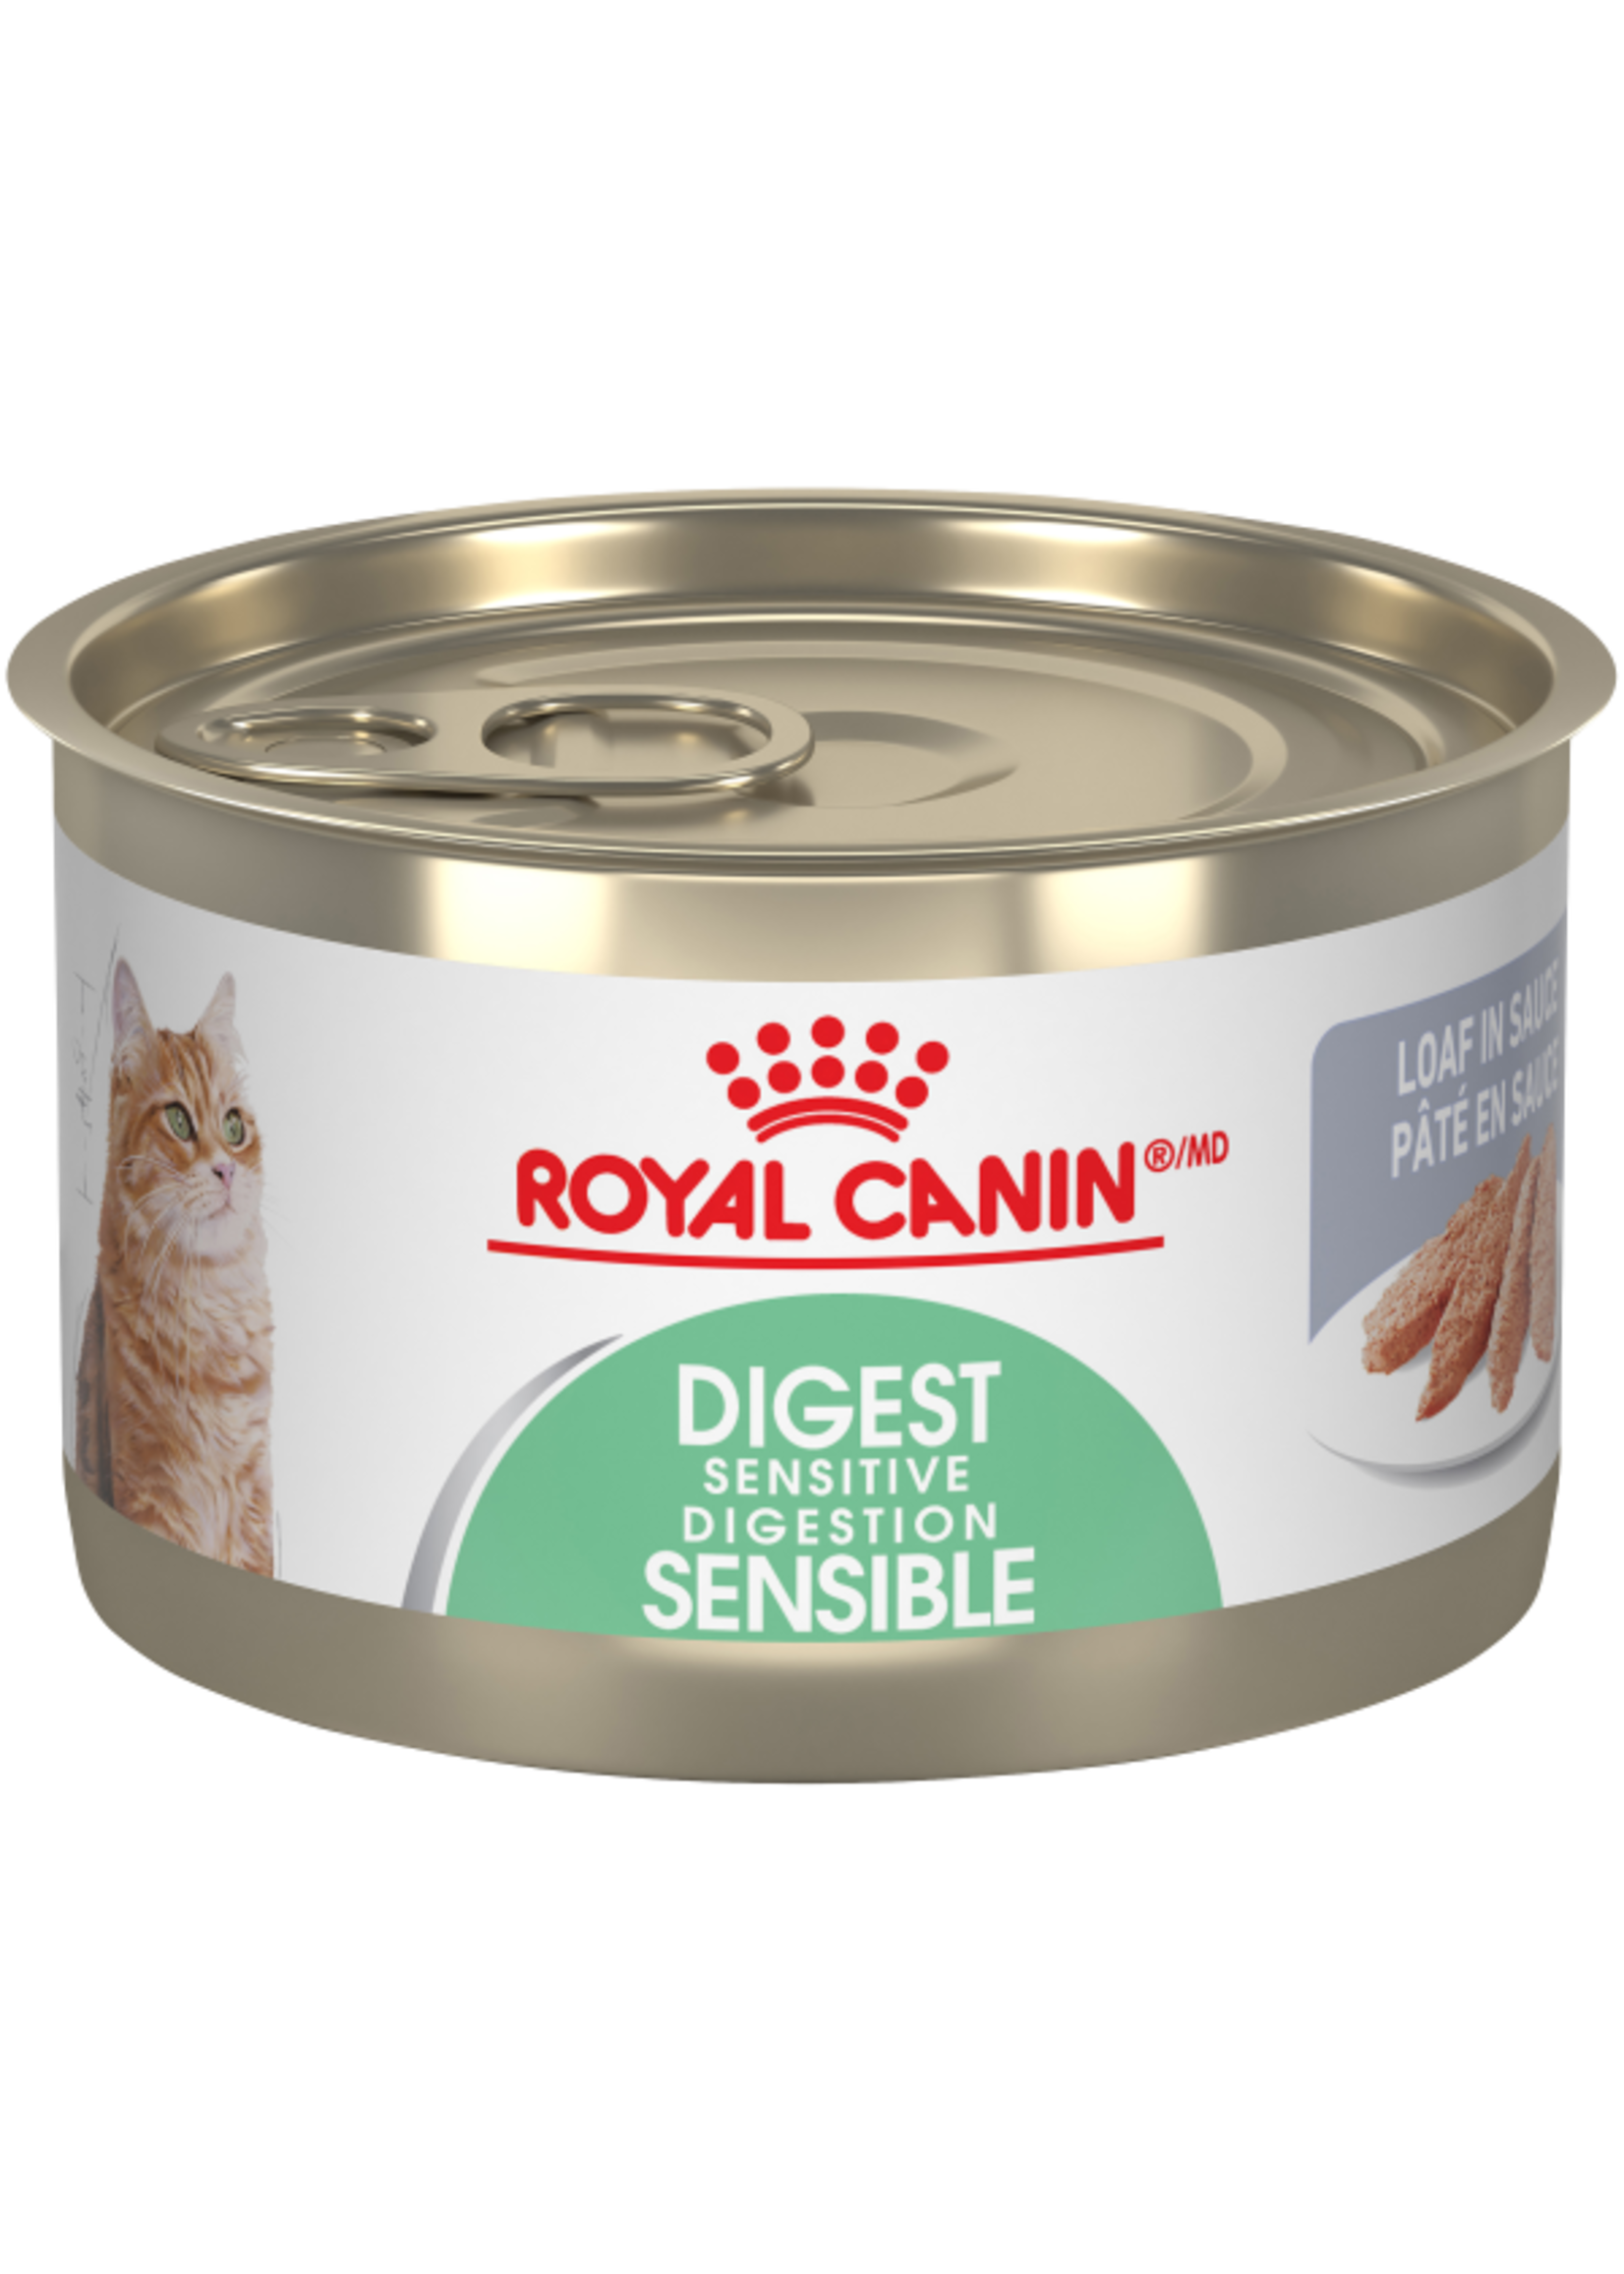 Royal Canin Royal Canin - FCN Digest Sensitive Loaf 145g